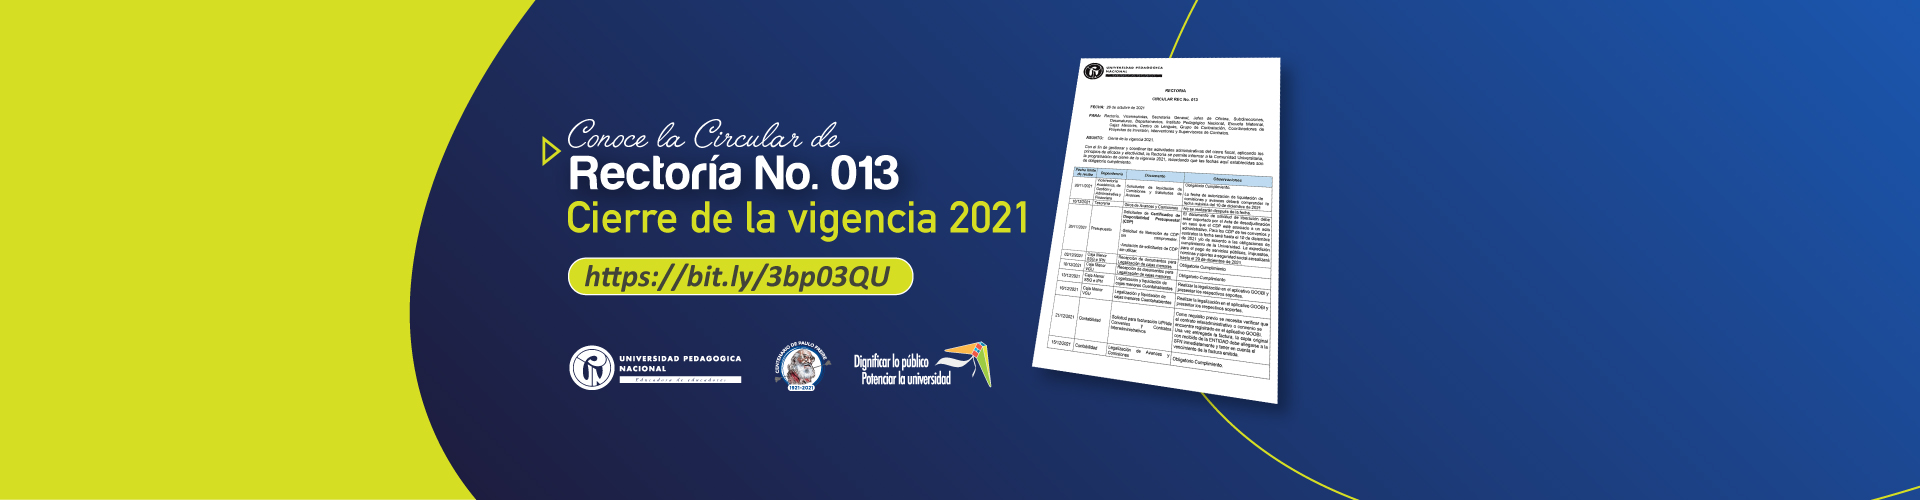 Conoce la circular de Rectoría No. 013 - Cierre de vigencia 2021